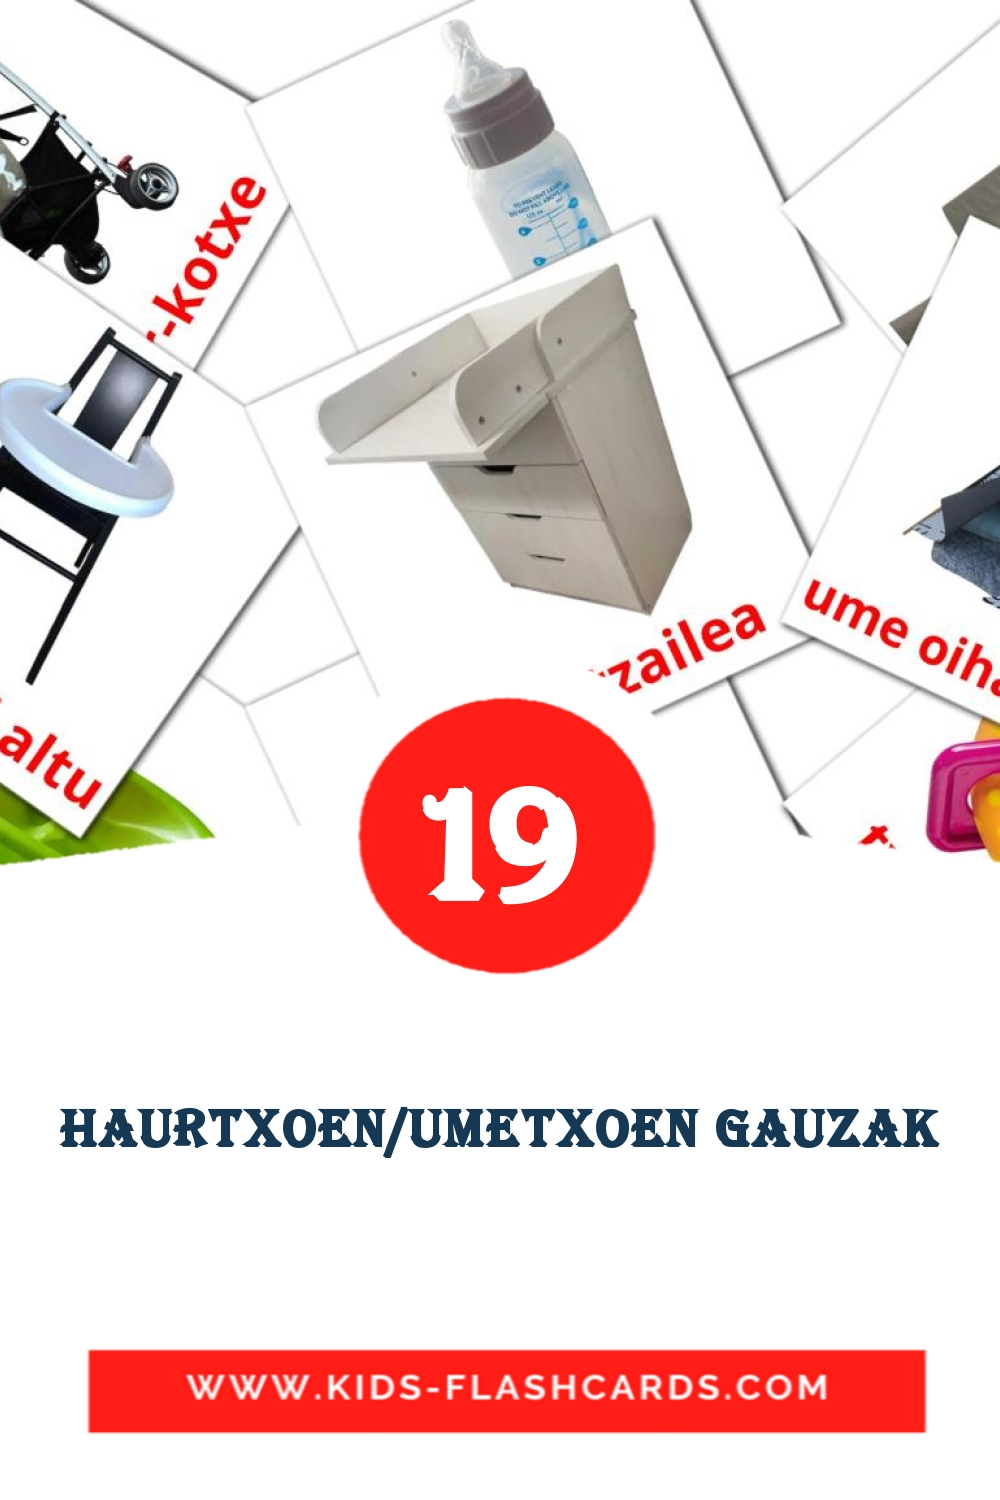 19 tarjetas didacticas de Haurtxoen/Umetxoen gauzak para el jardín de infancia en euskera